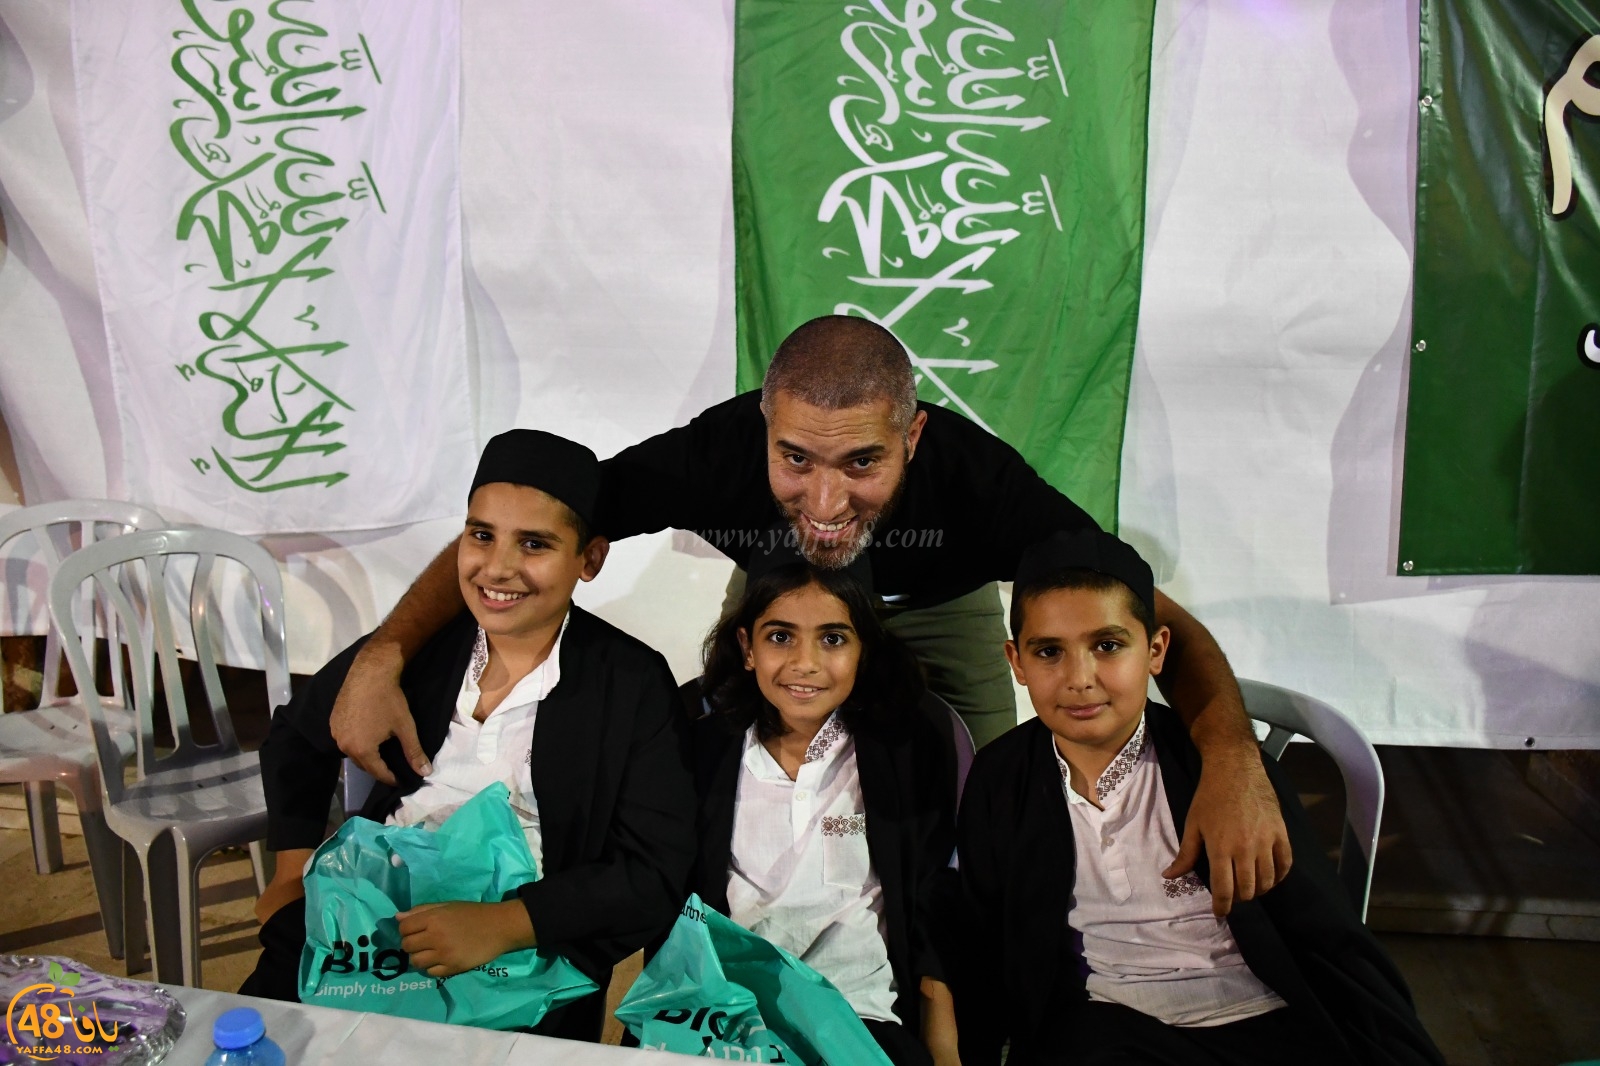 خيمة الهدى تستضيف الشيخ رائد فتحي لتكريم حفظة القرآن الكريم في يافا